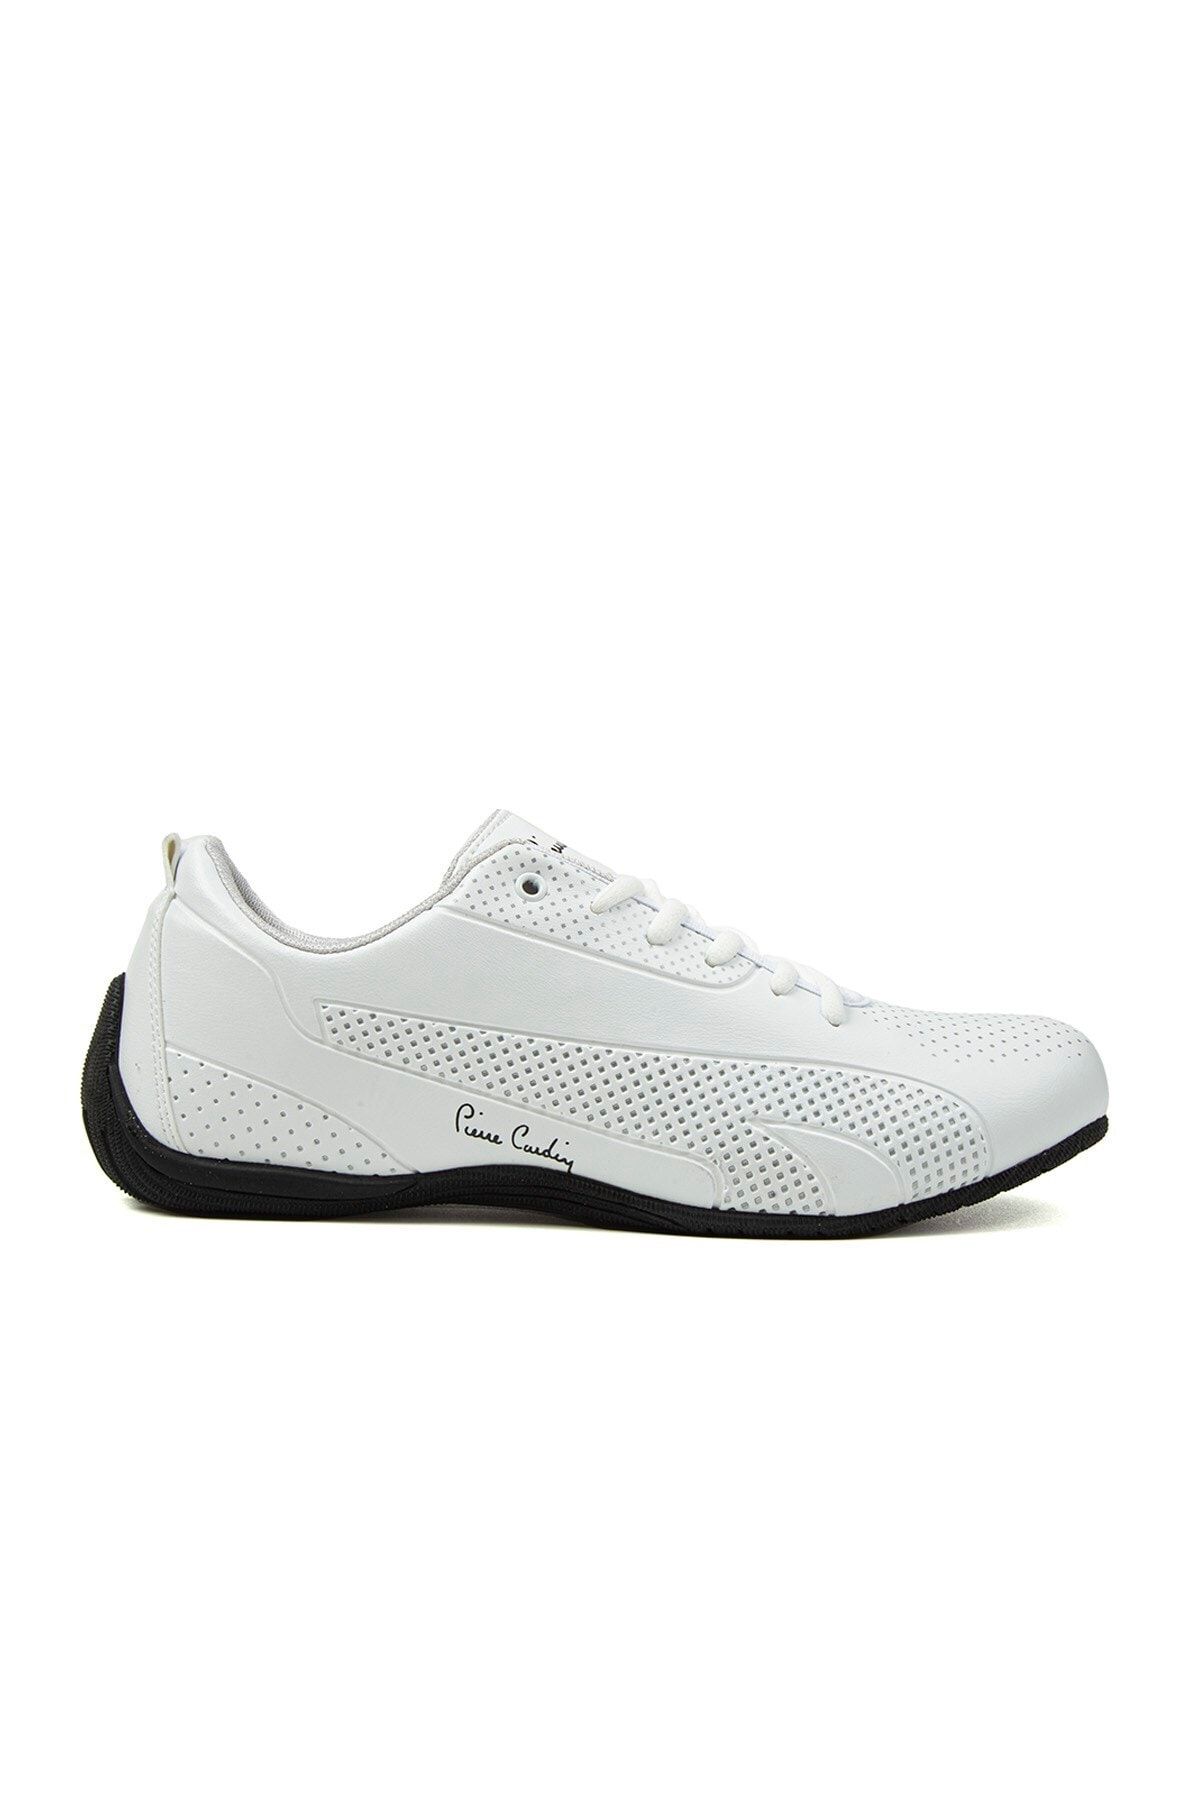 Pierre Cardin PC-30073 Beyaz Erkek Spor Ayakkabı